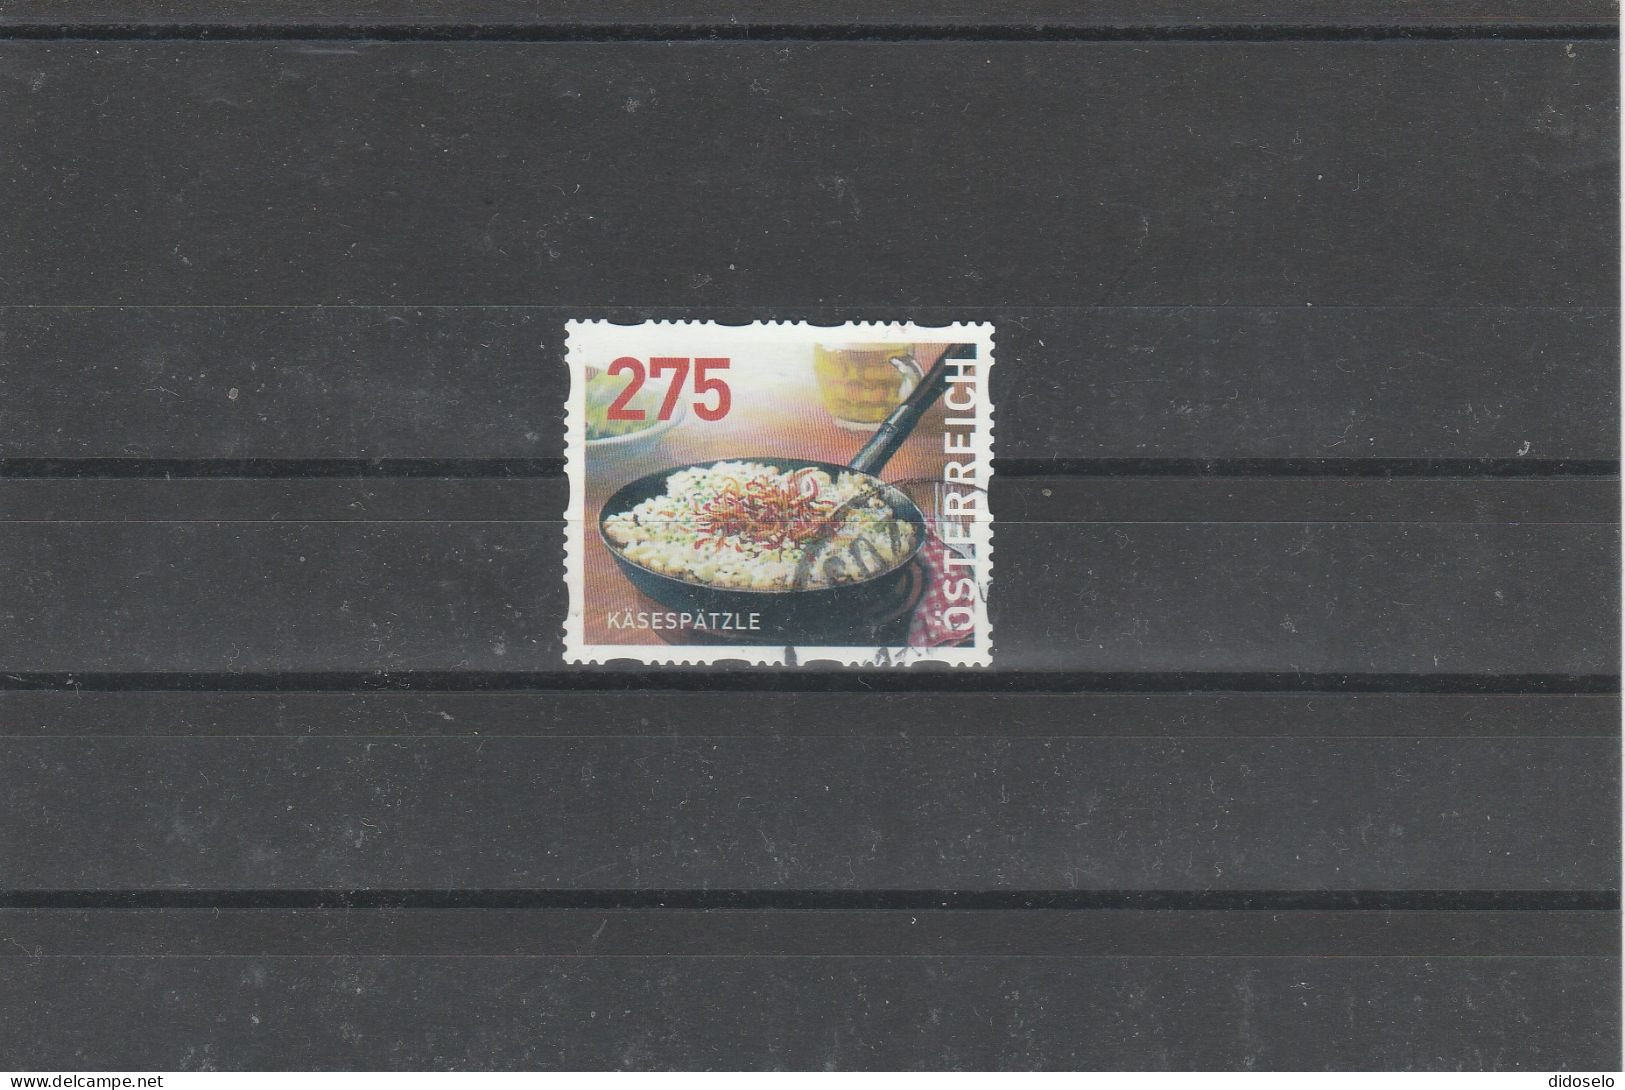 Austria - 2020 - Dispenser Stamp - Used - Mic.#32 - Usati